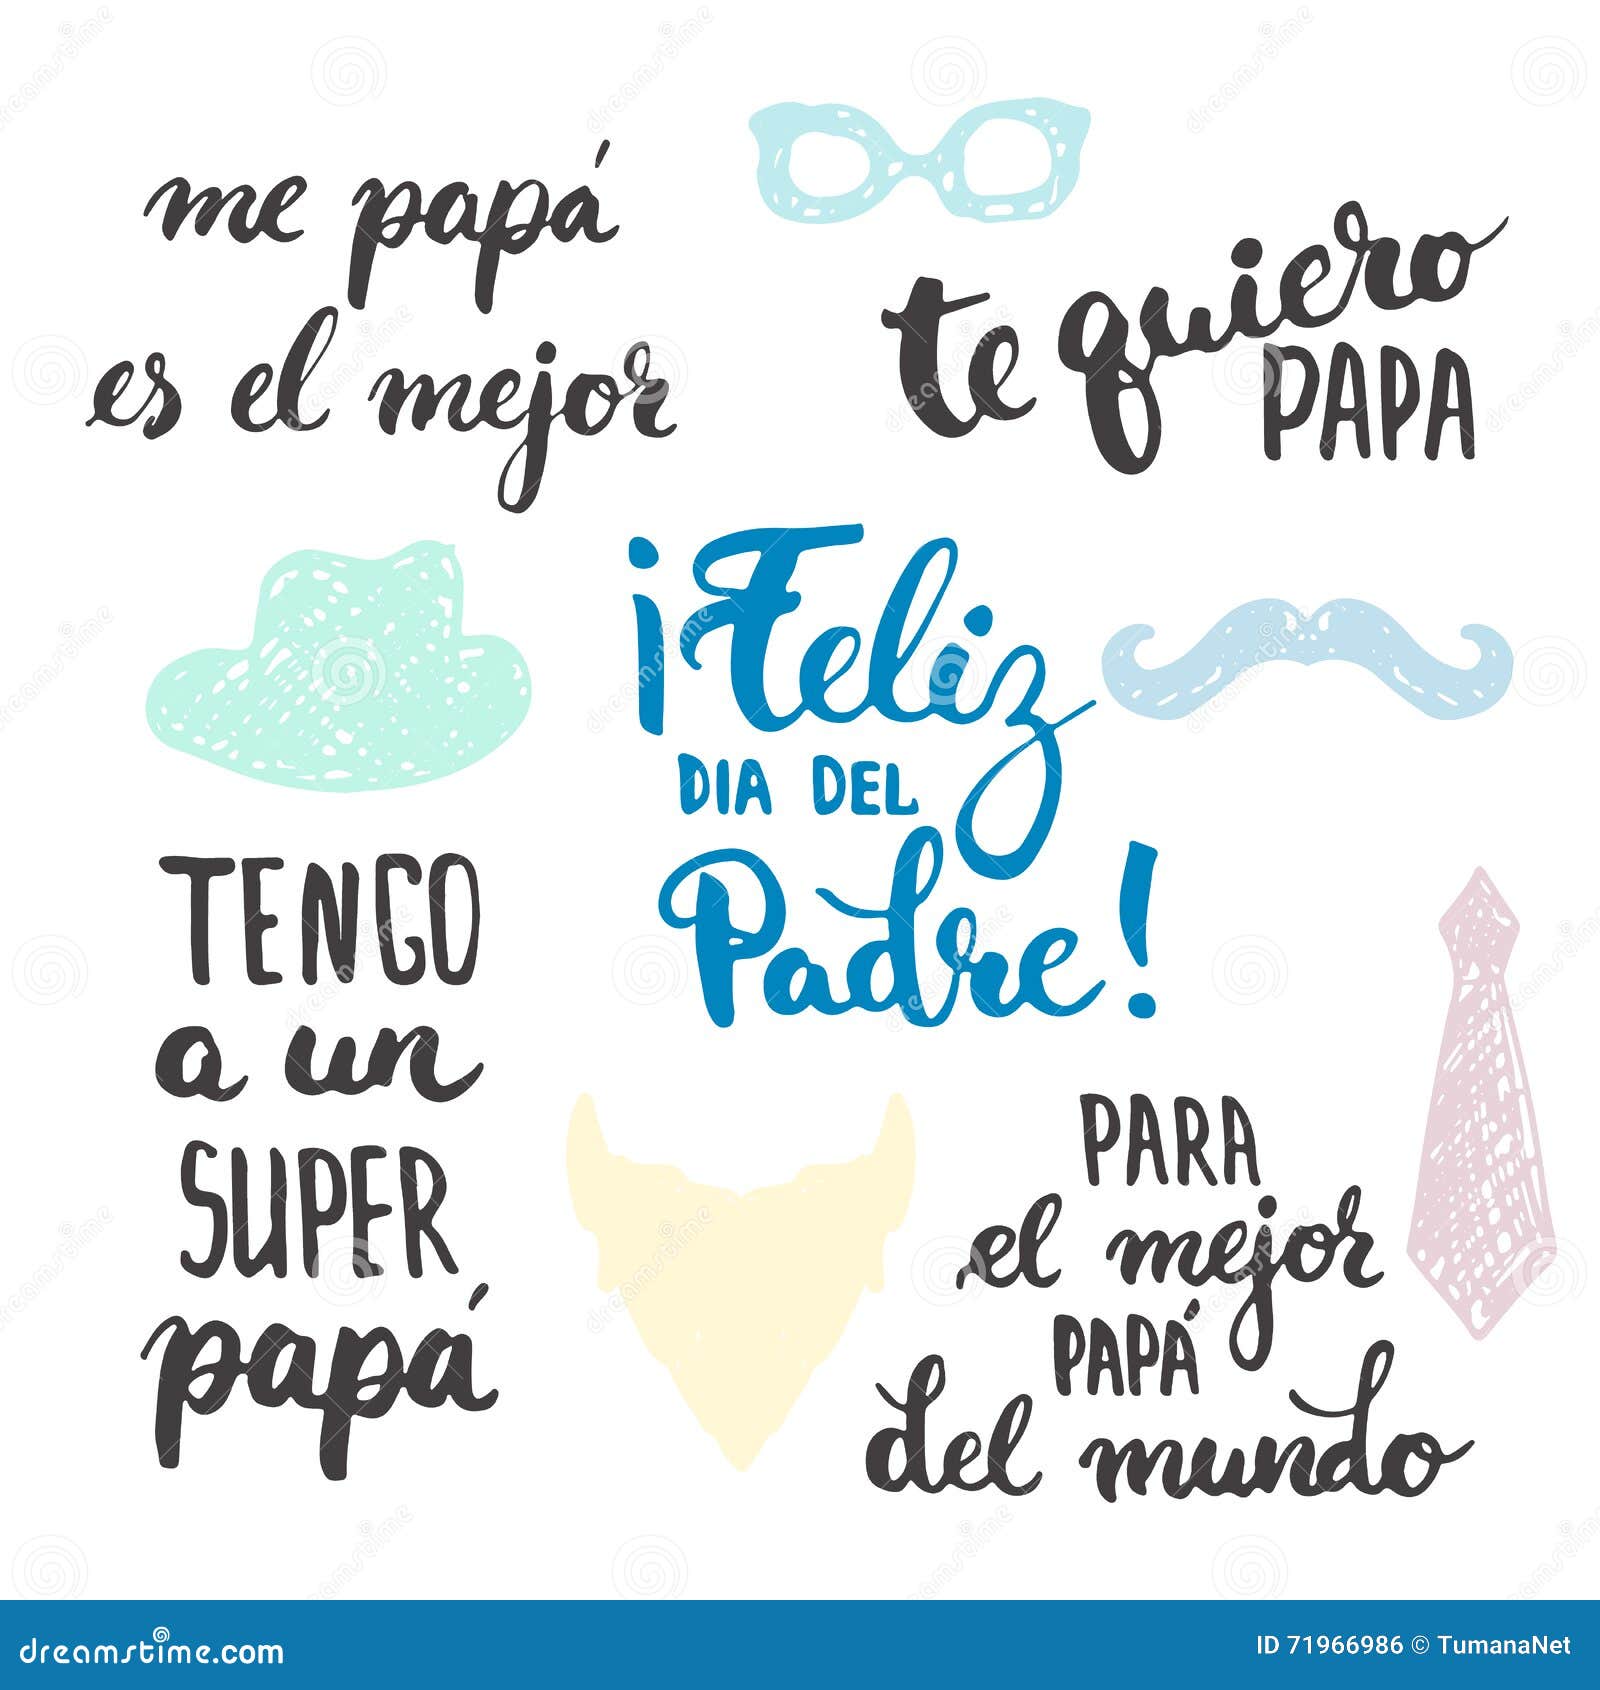 father's day lettering calligraphy phrases set in spanish feliz dia del padre, tengo a un super, papa, te quiero, papa